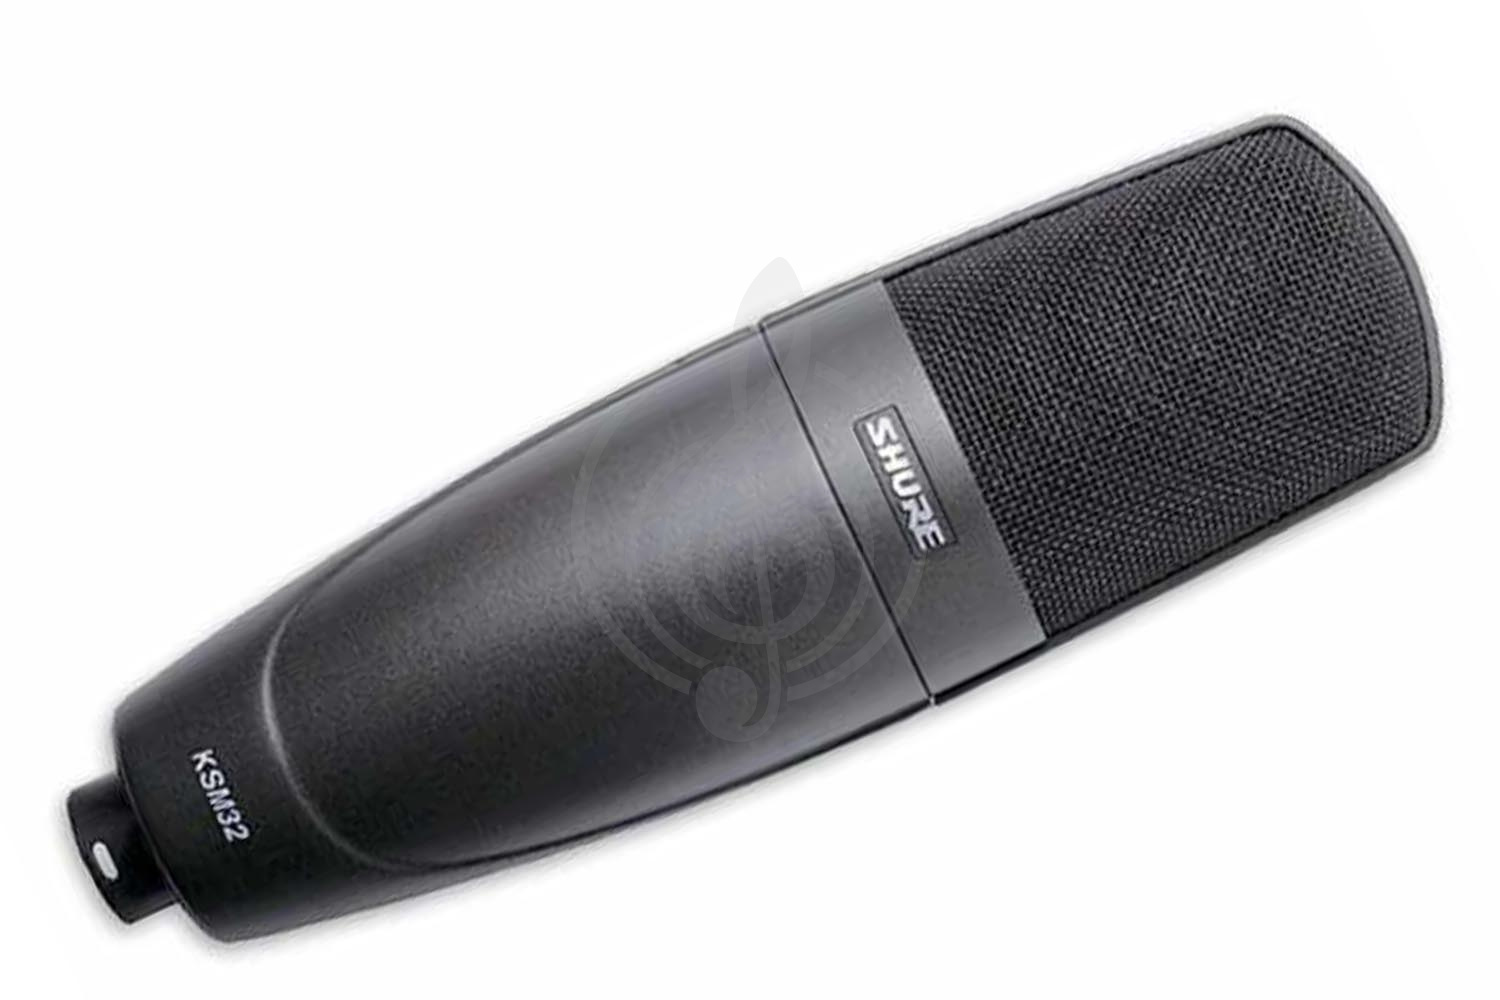 Конденсаторный студийный микрофон Конденсаторные студийные микрофоны Shure SHURE KSM32/CG - конденсаторный студийный микрофон RSF10SSX3S - фото 1